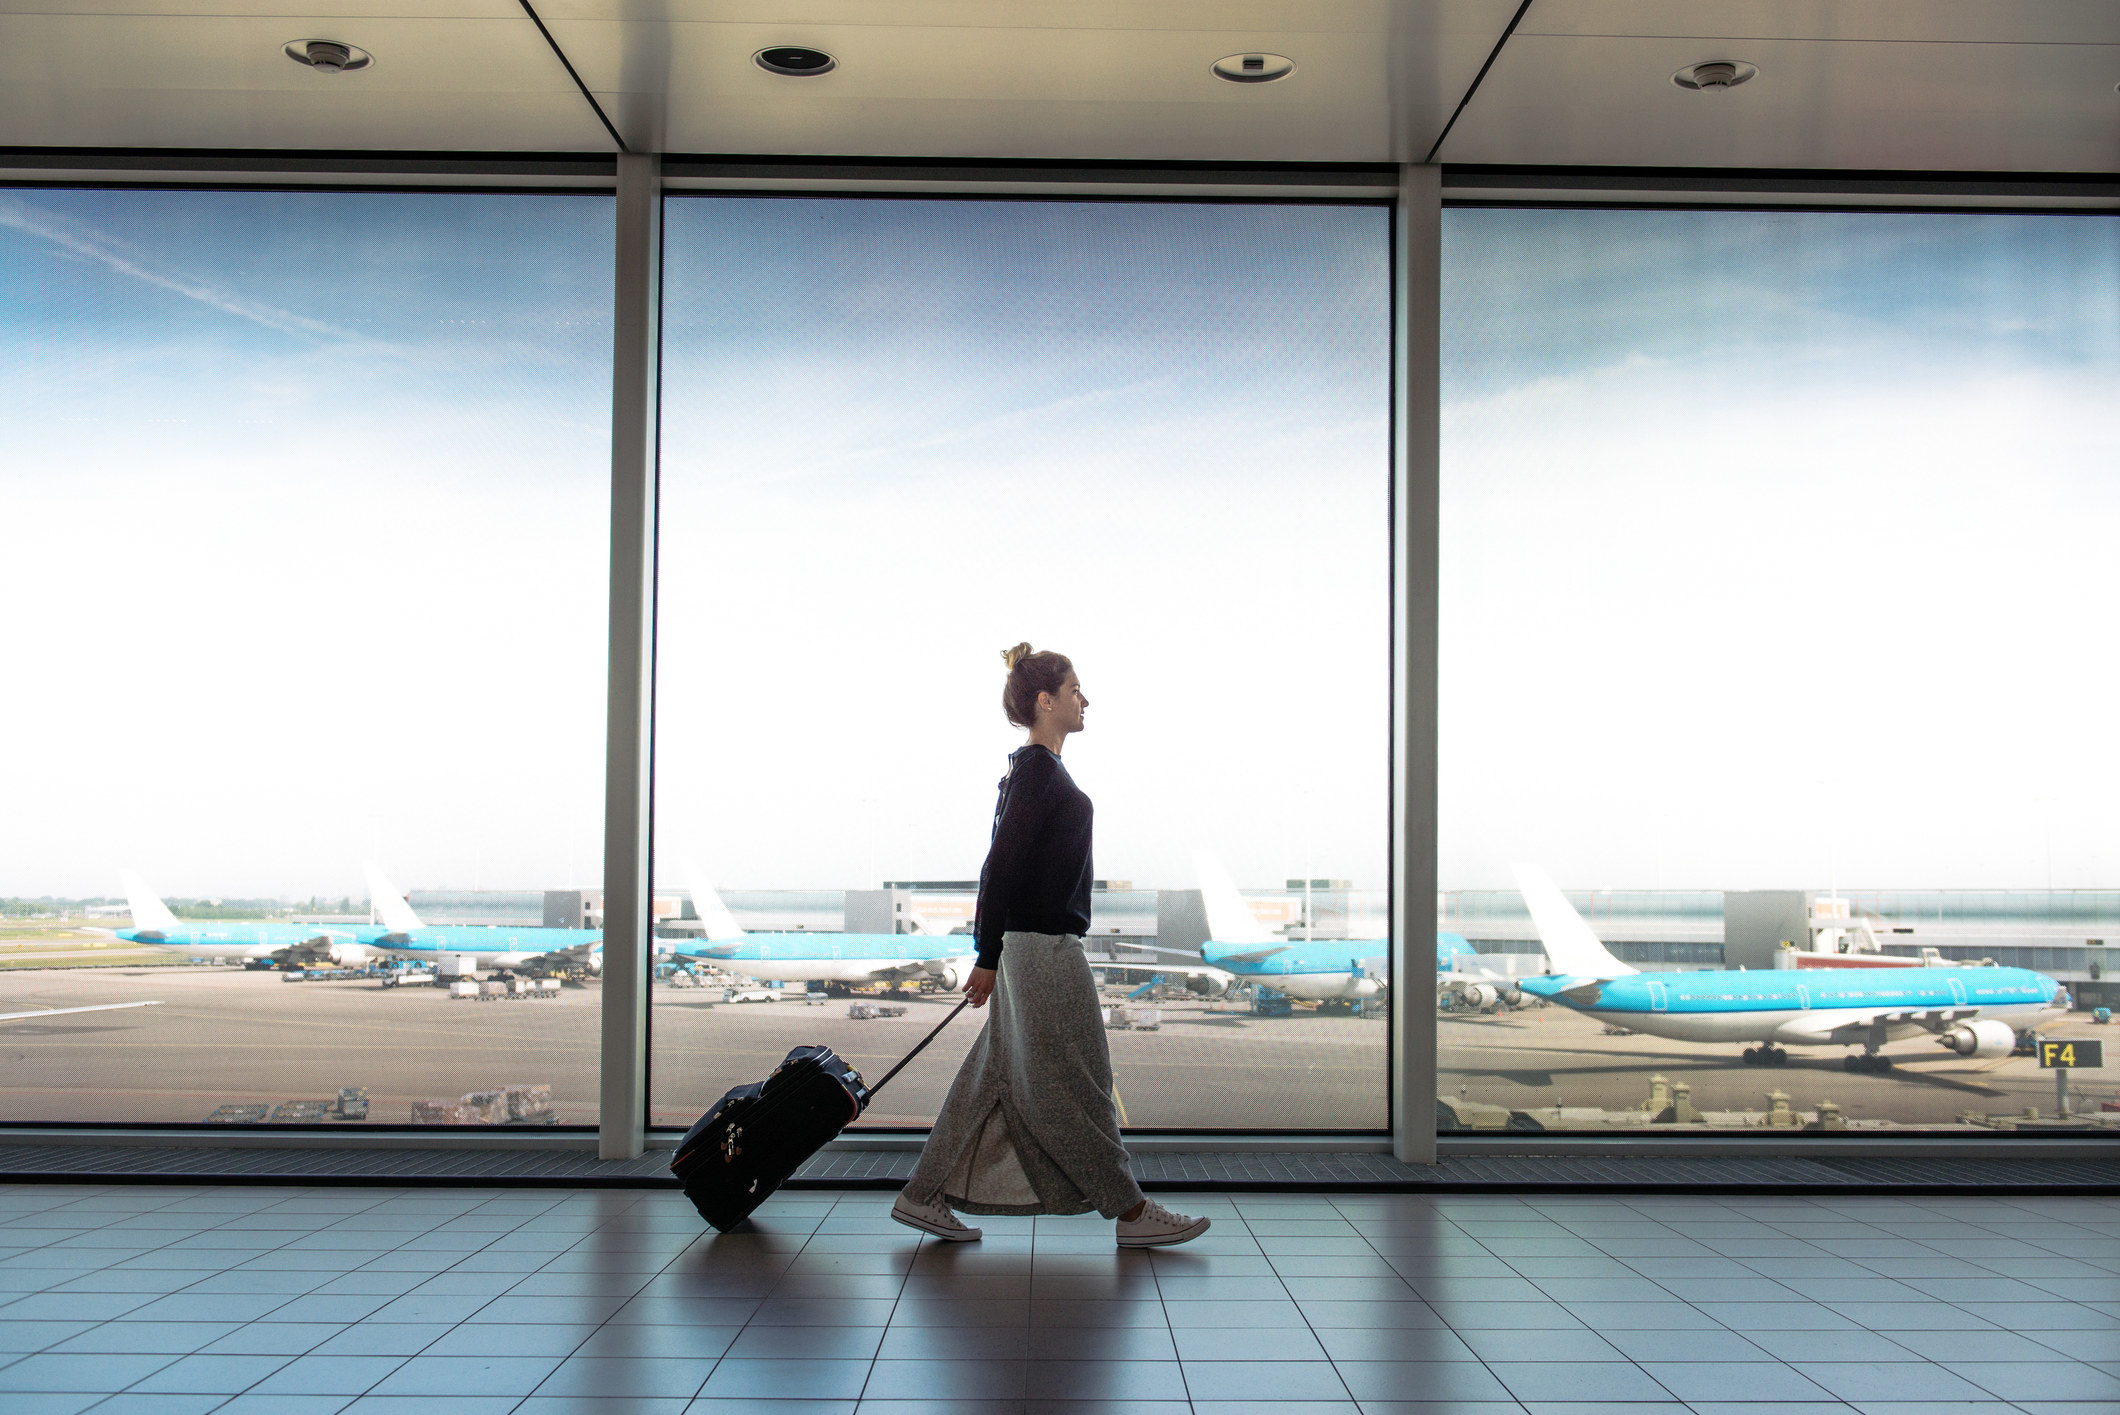 A woman walking through an airport